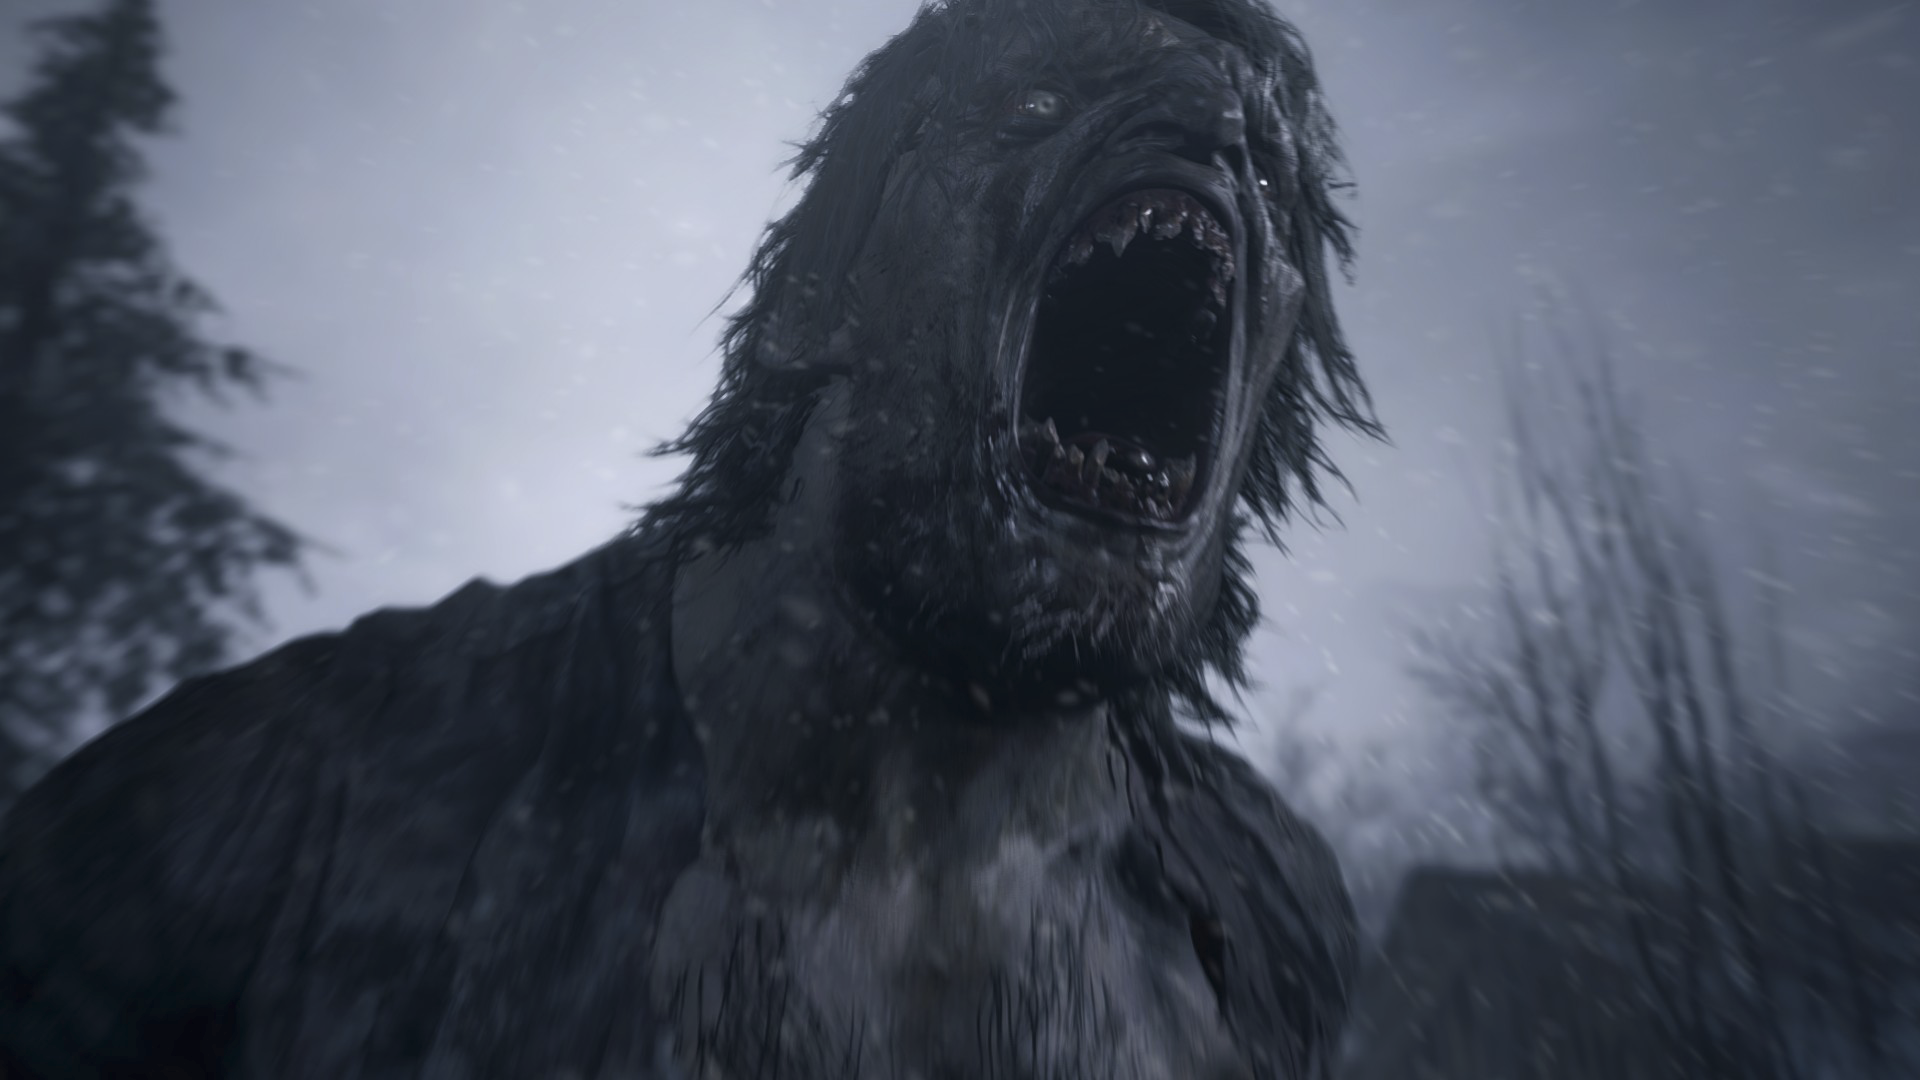 Resident Evil Village - captura de tela promocional mostrando personagem humanoide bestial gritando.